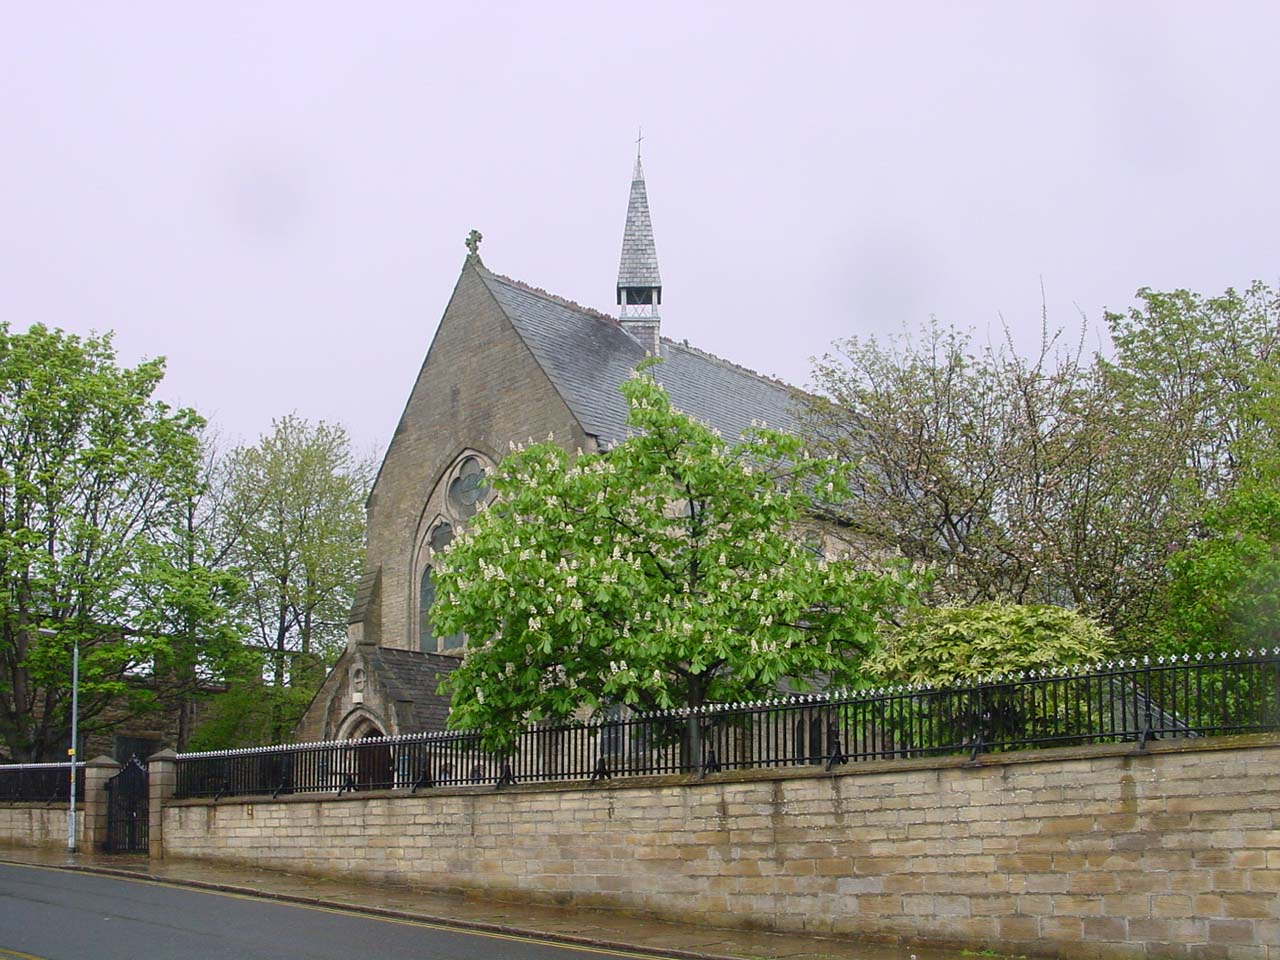 All Saints Church